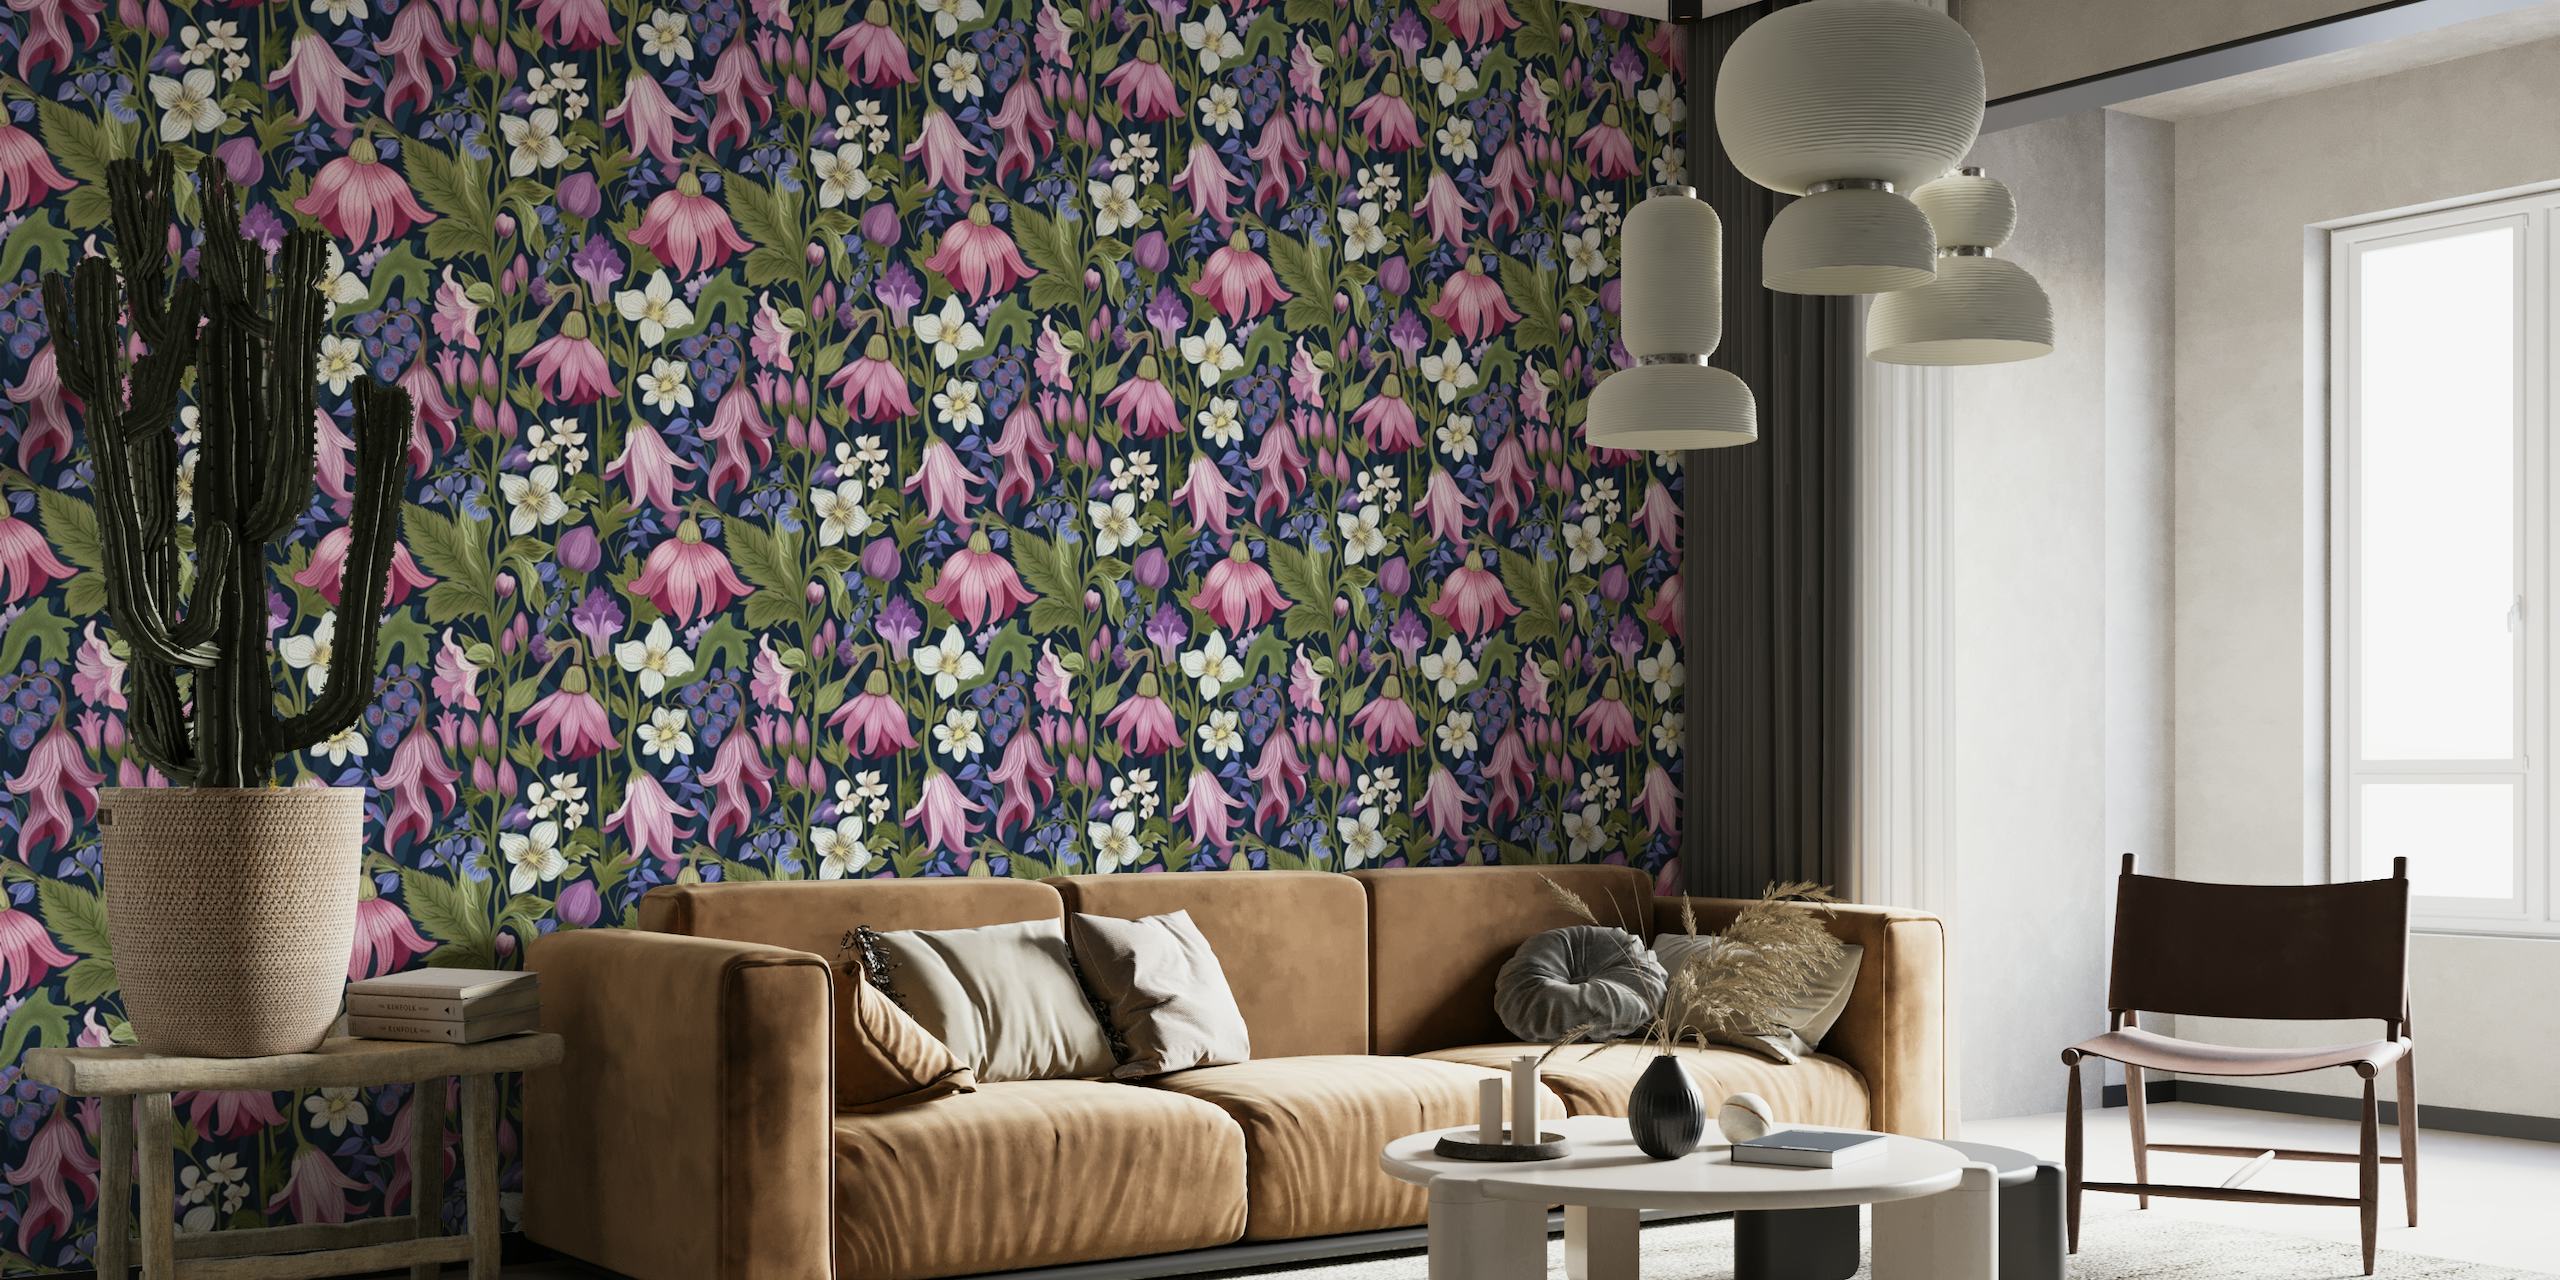 Elegante botanische muurschildering met weelderige bloemen in roze, paars en wit op een diepblauwe achtergrond